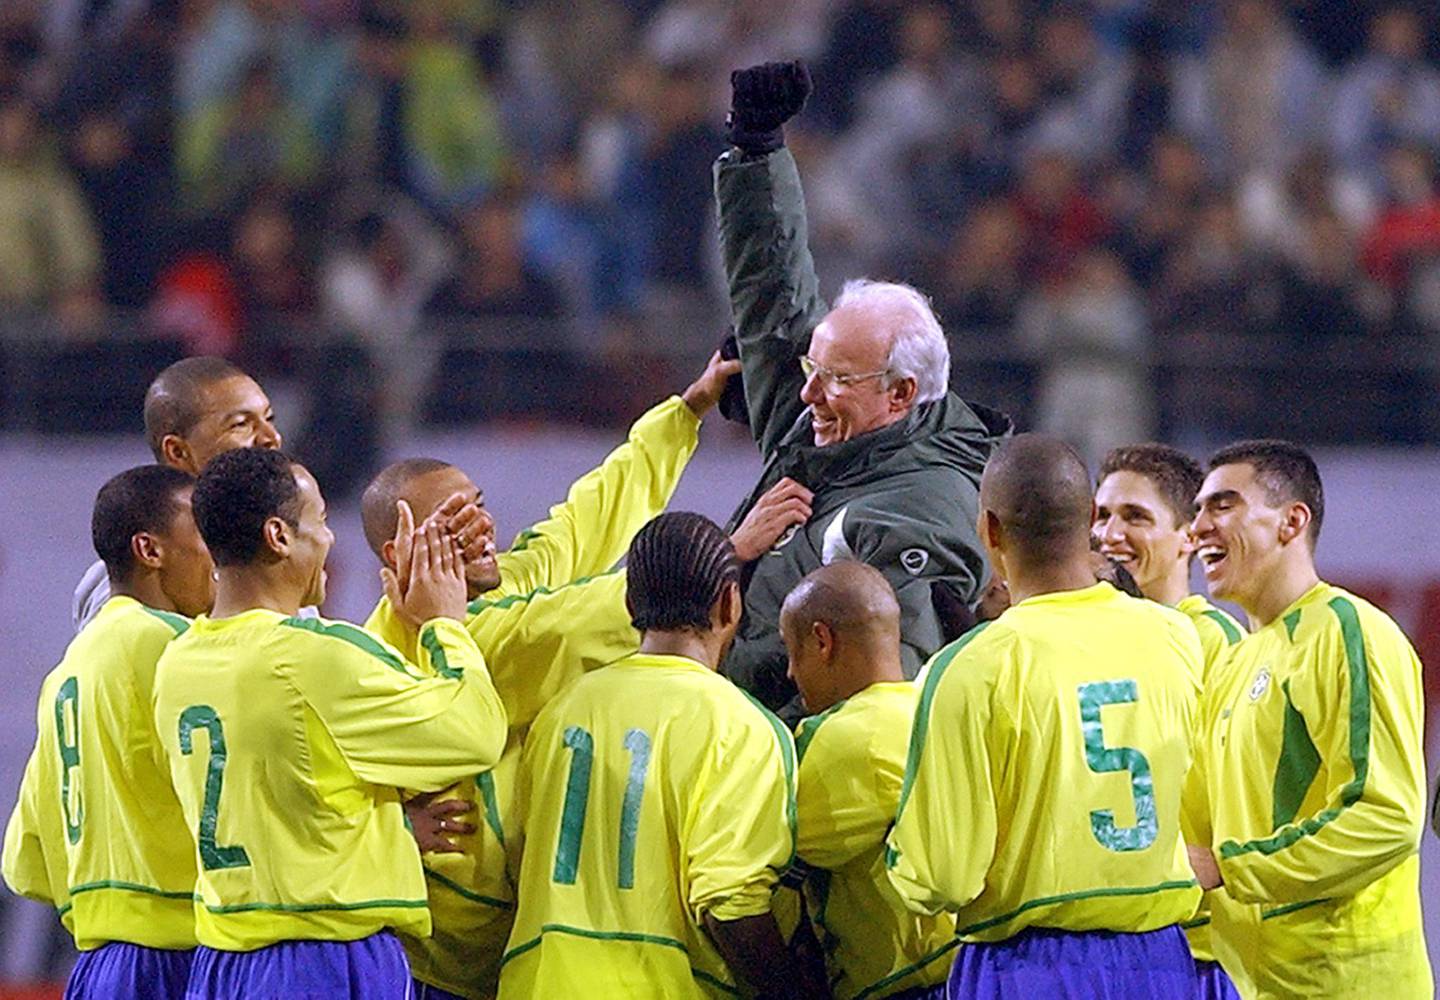 La causa de Mário Lobo Zagallo no fue revelada. Su deceso generó luto en el fútbol brasileño, con homenajes de la Confederación Brasileña de Fútbol y varios clubes.